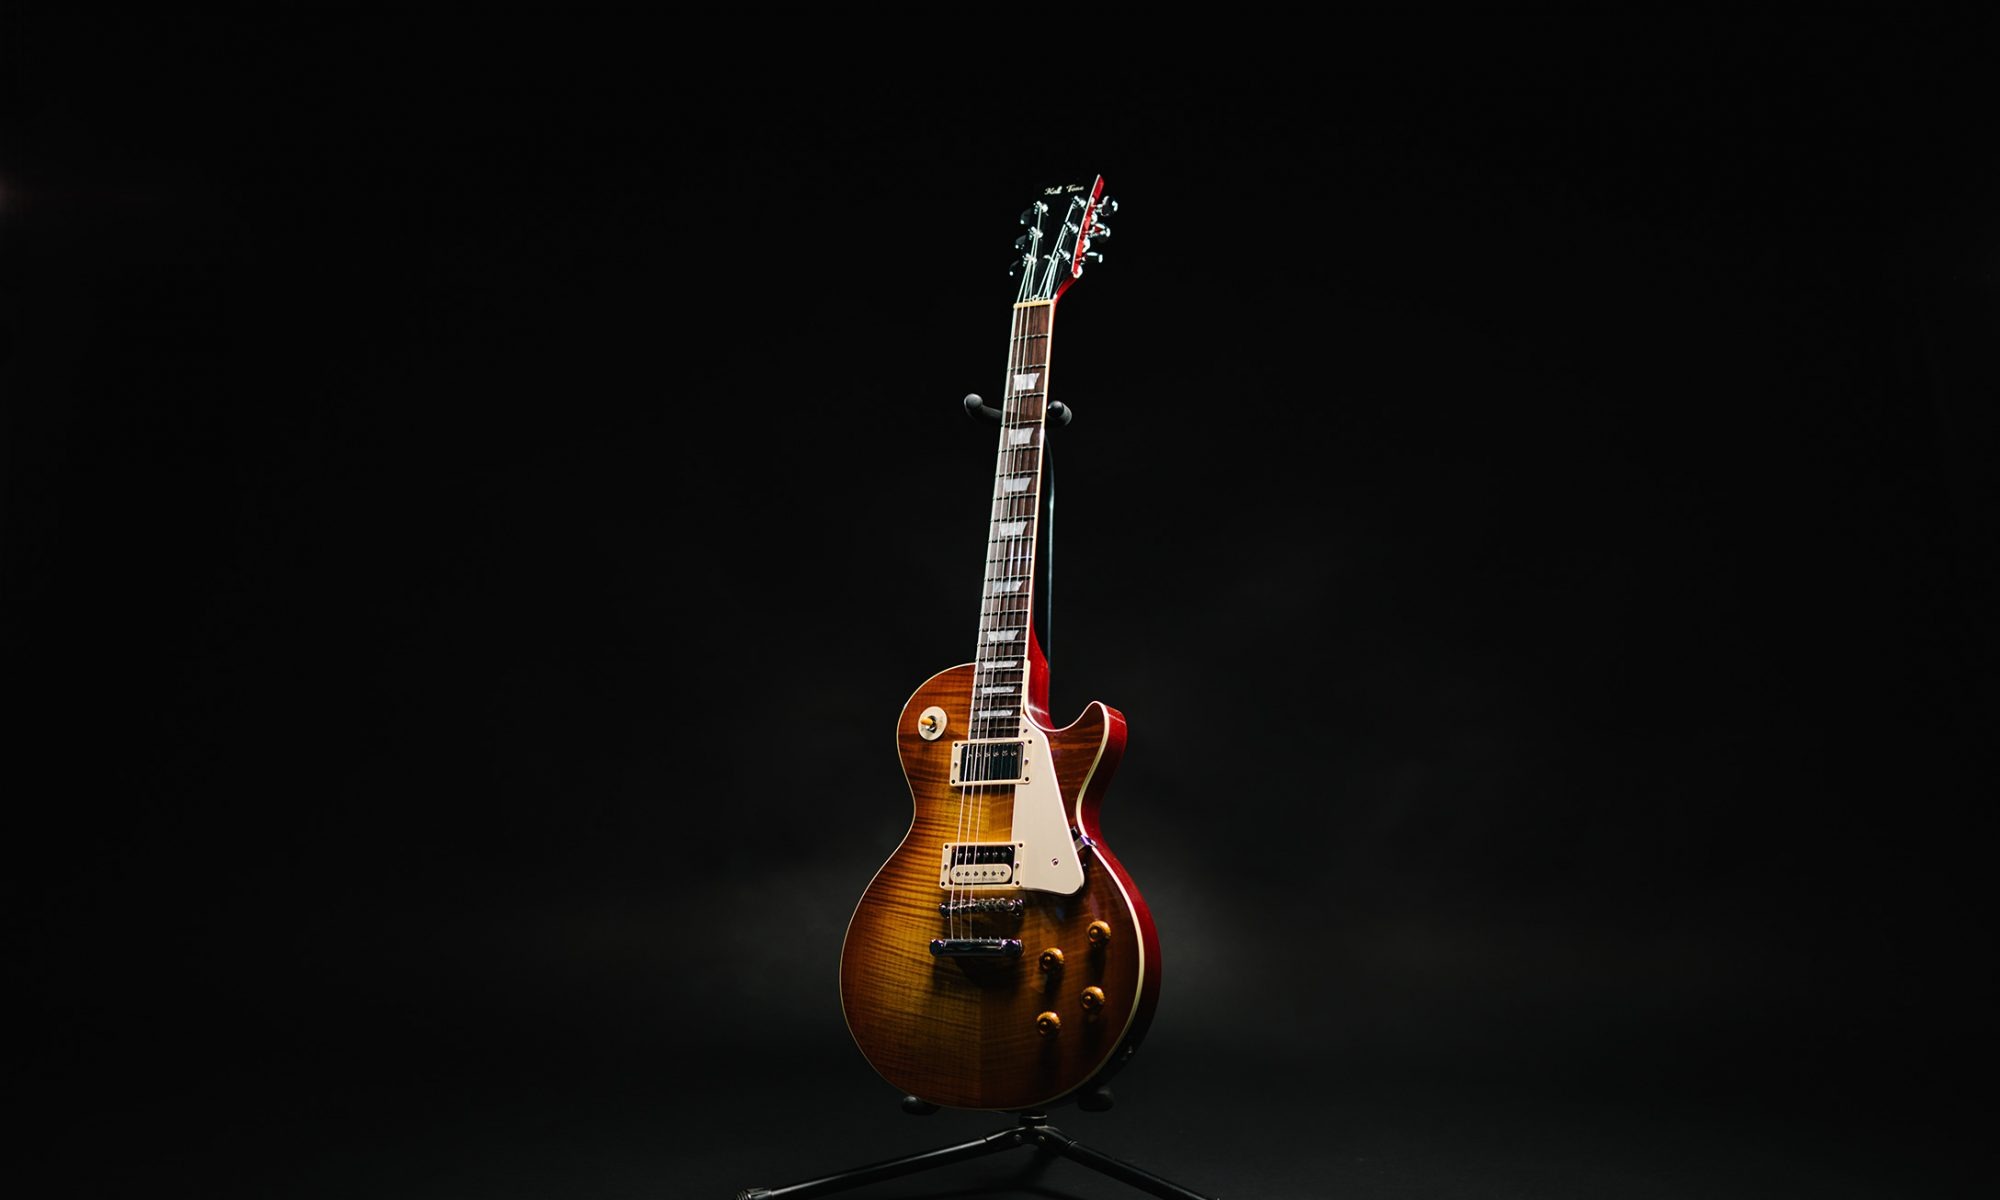 kal tone guitar product photo